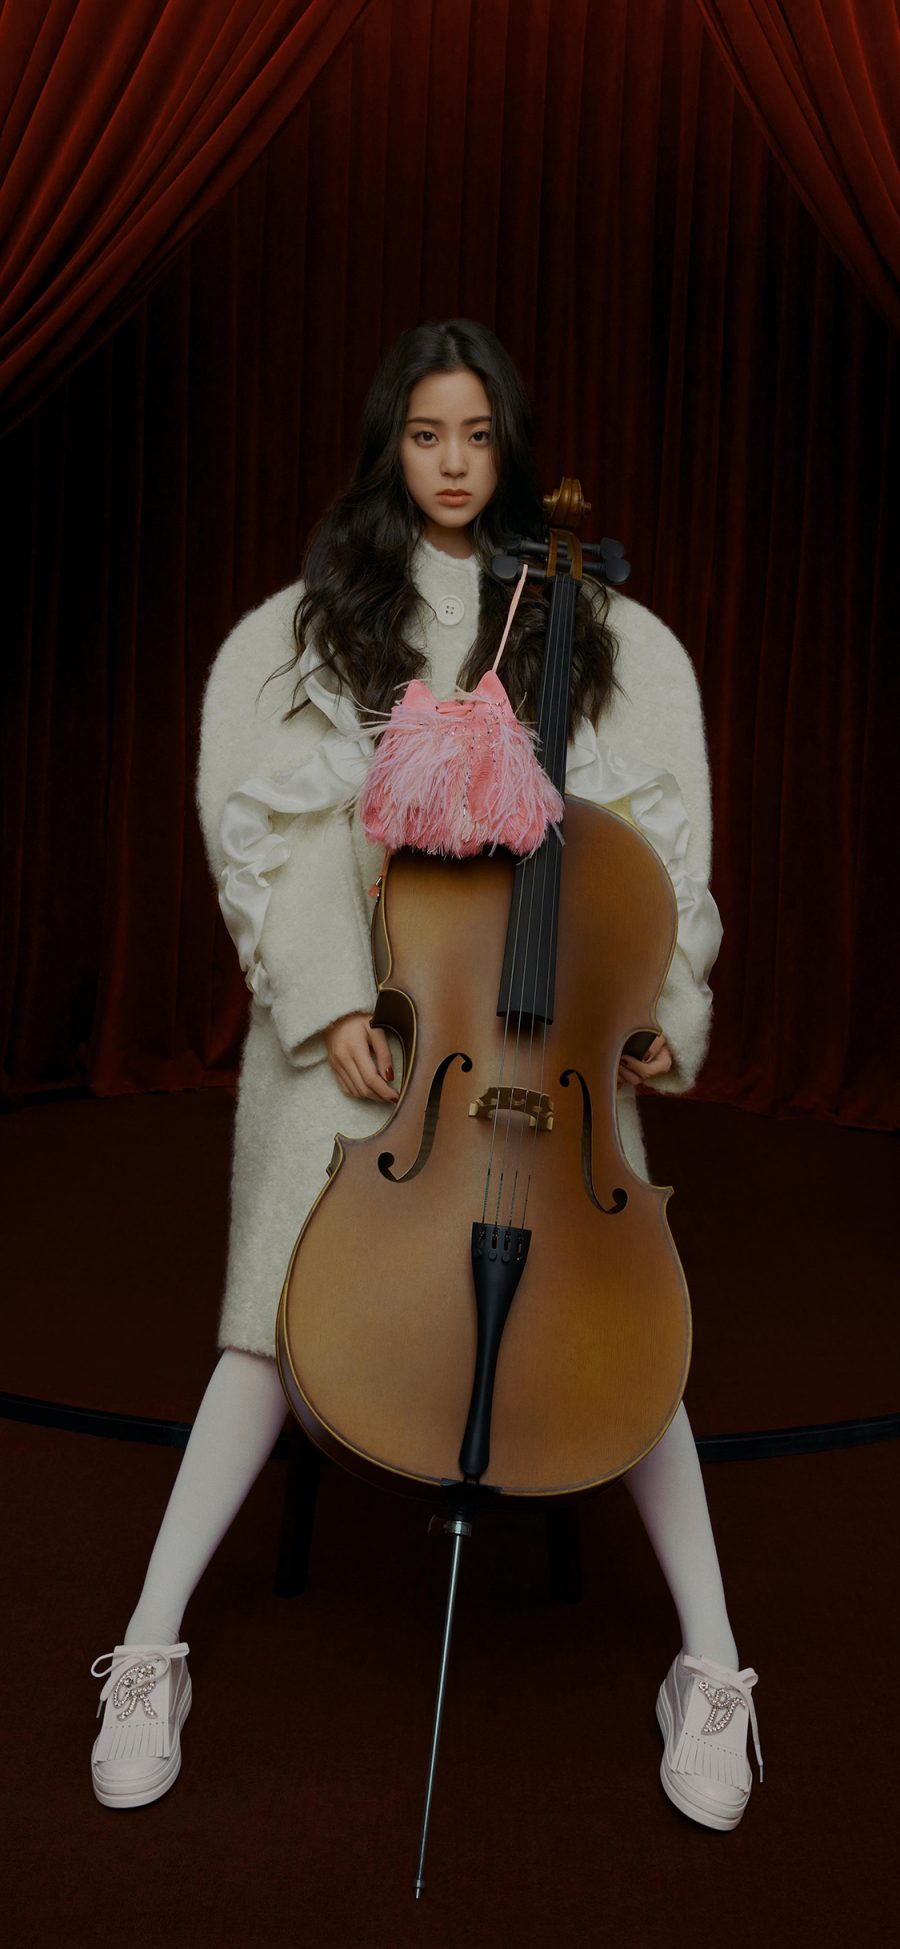 [2436×1125]欧阳娜娜 演奏家 明星 大提琴 写真 苹果手机美女壁纸图片